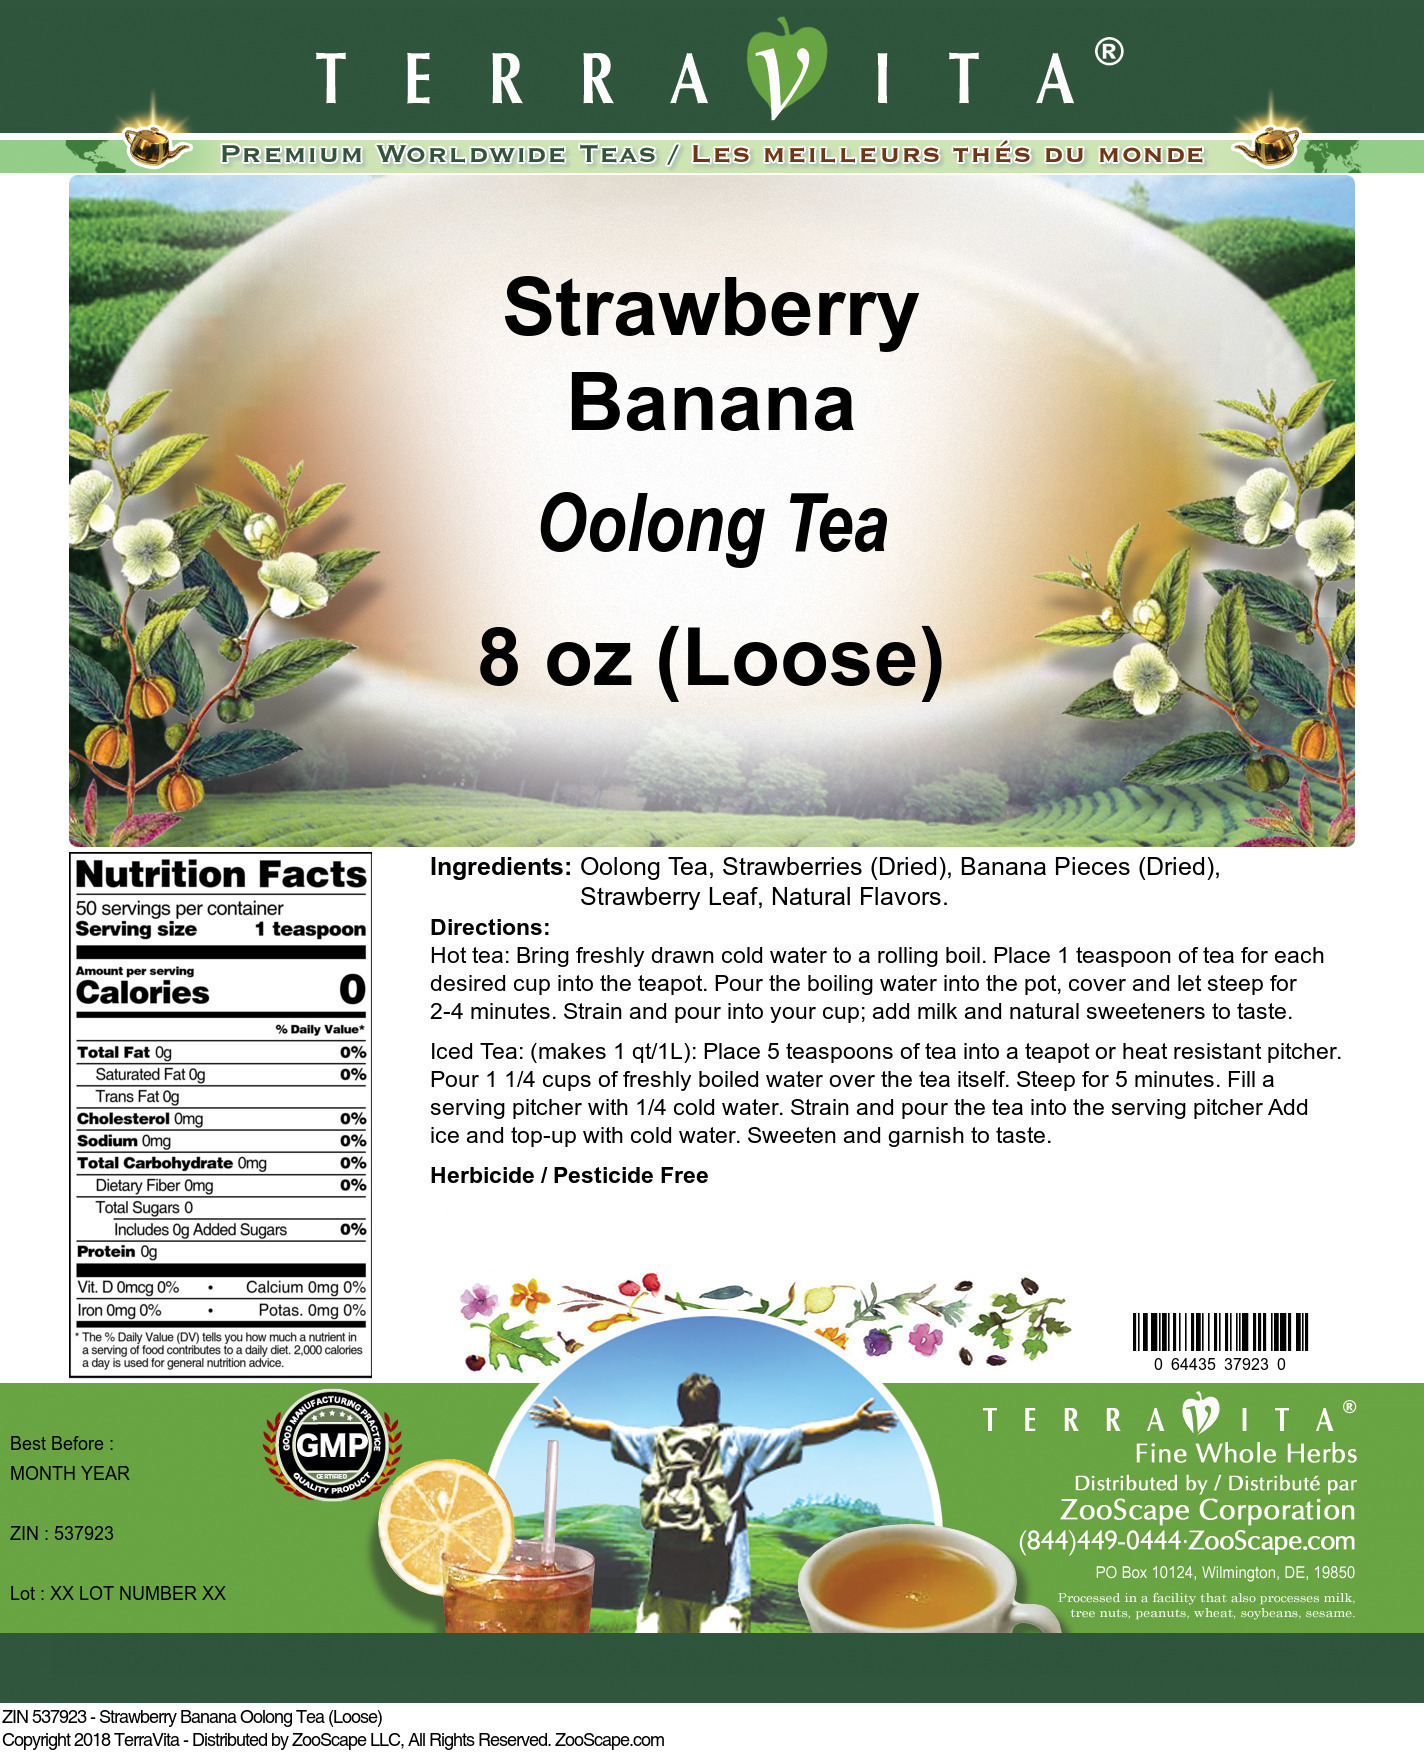 Strawberry Banana Oolong Tea (Loose) - Label